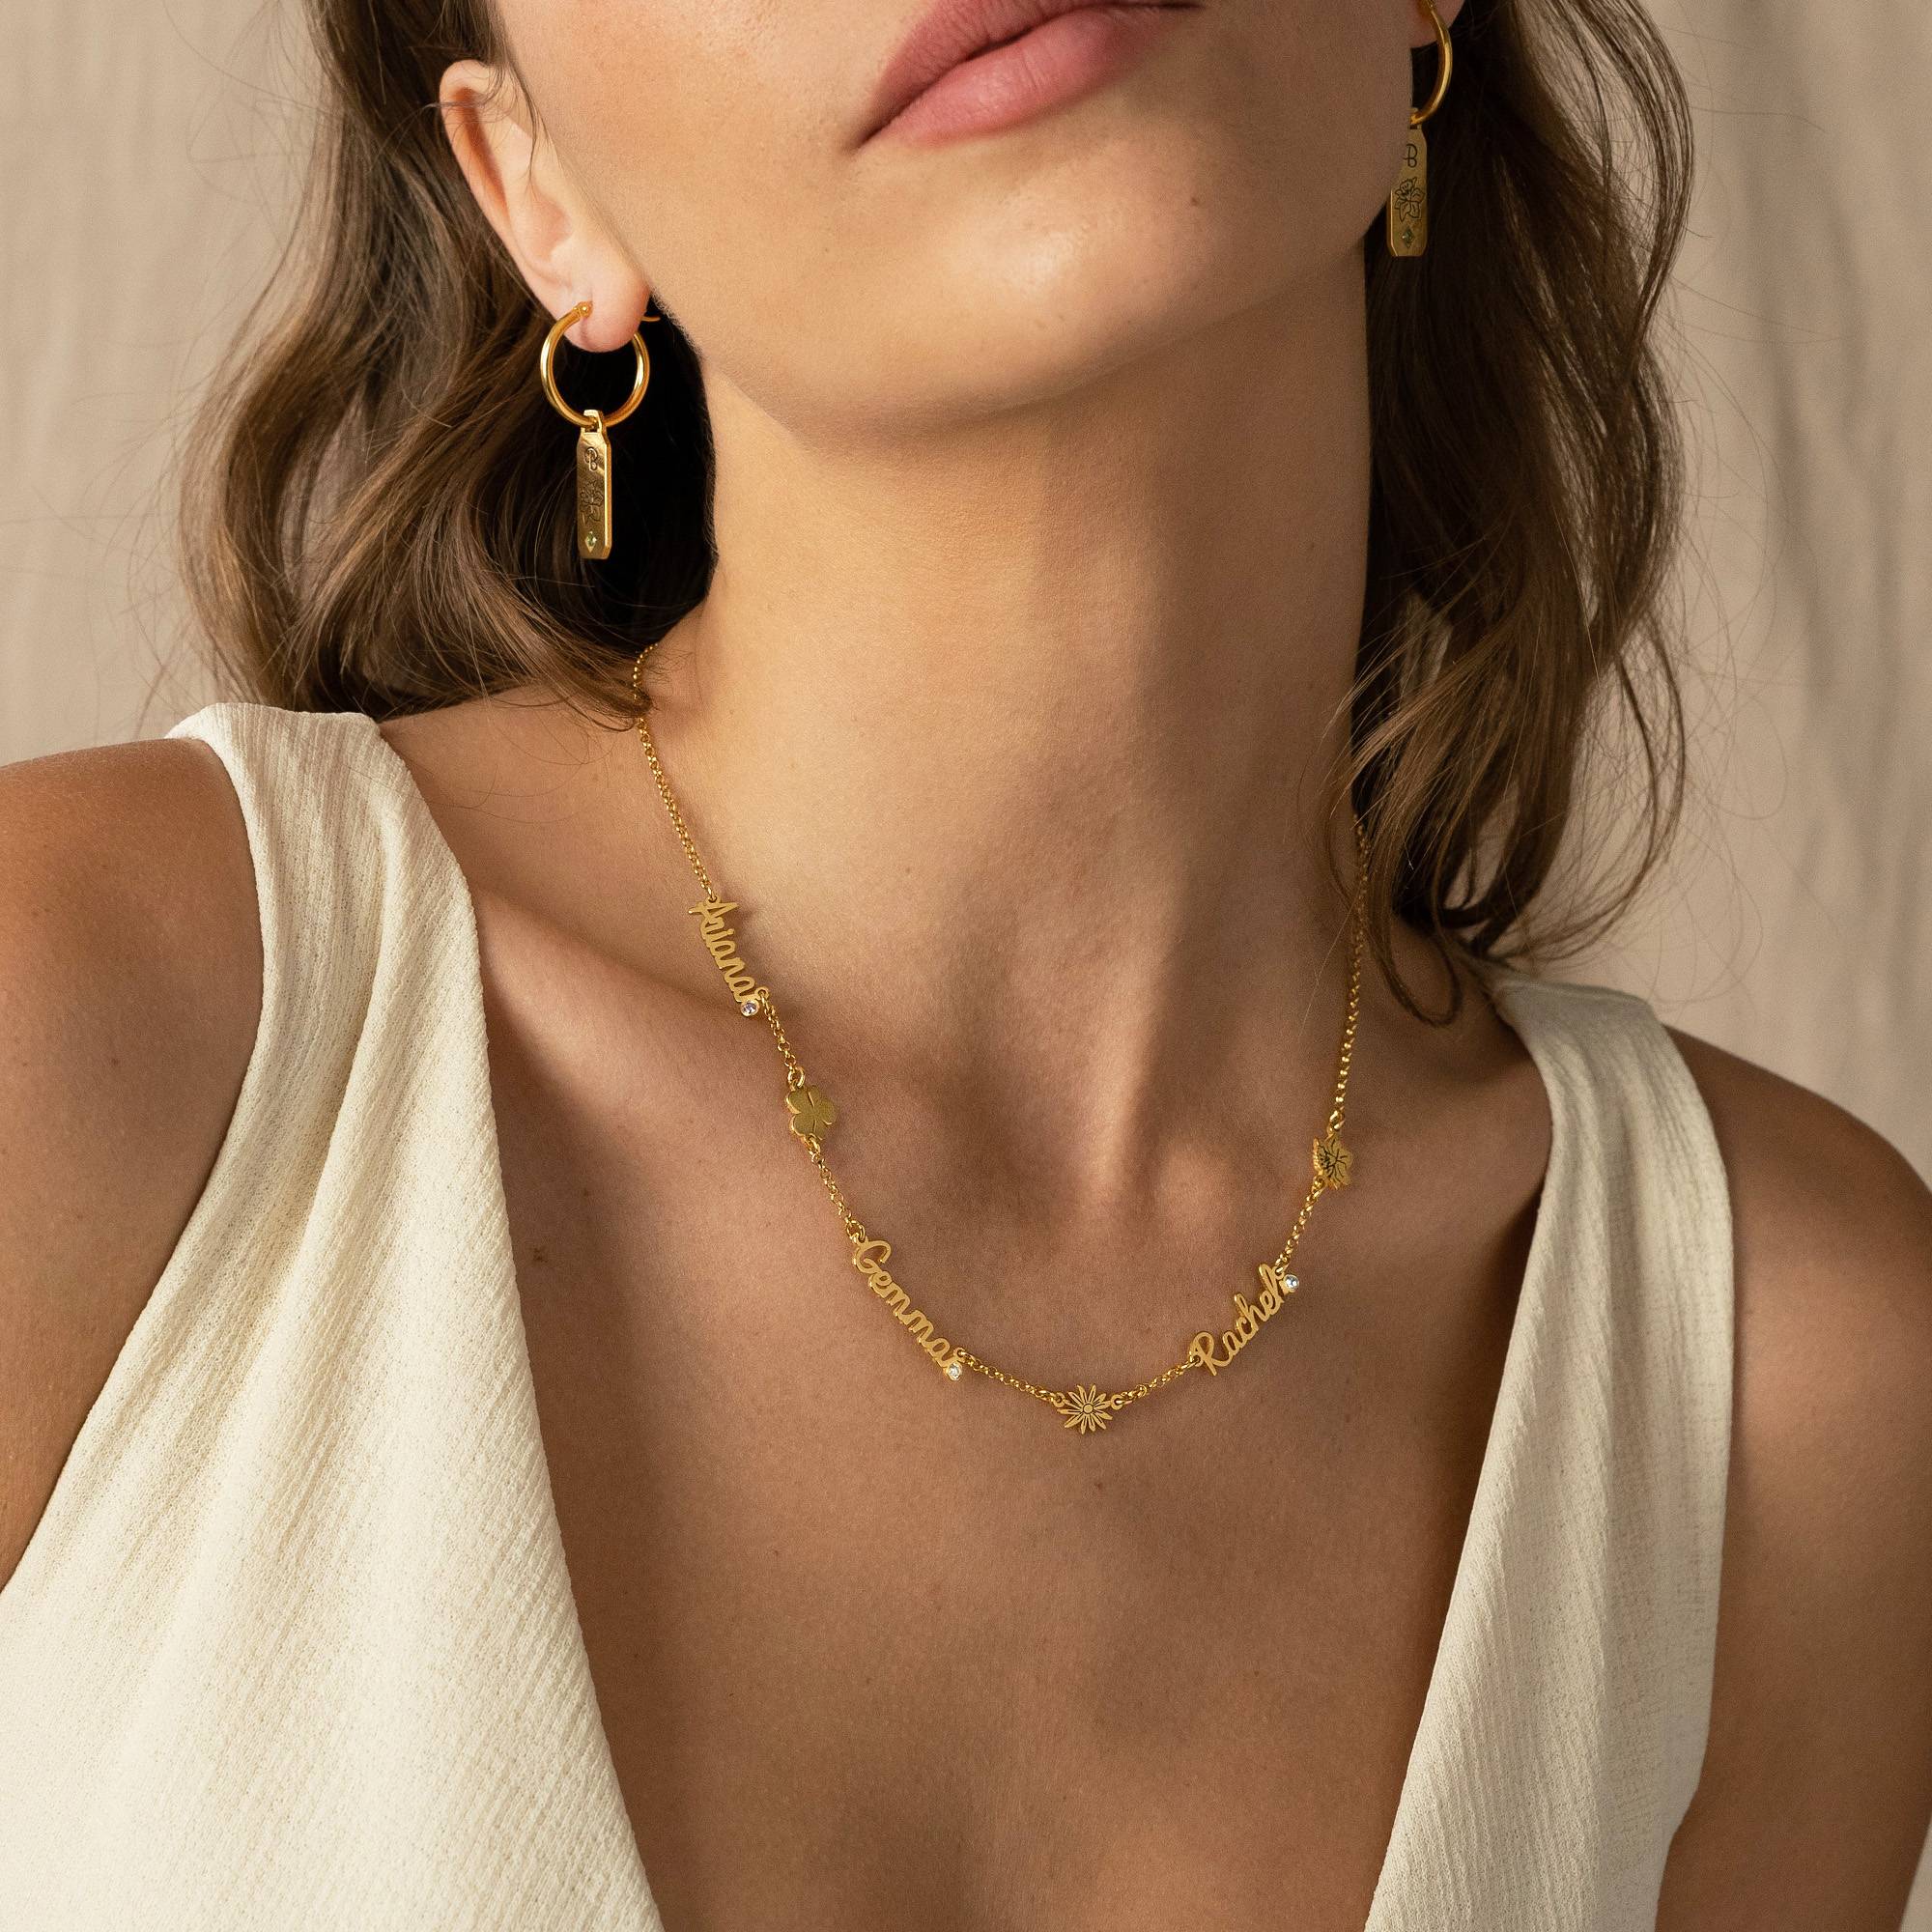 Blühende Geburtsblume Mehrnamen-Halskette mit Diamant - 750er Gold-Vermeil-6 Produktfoto